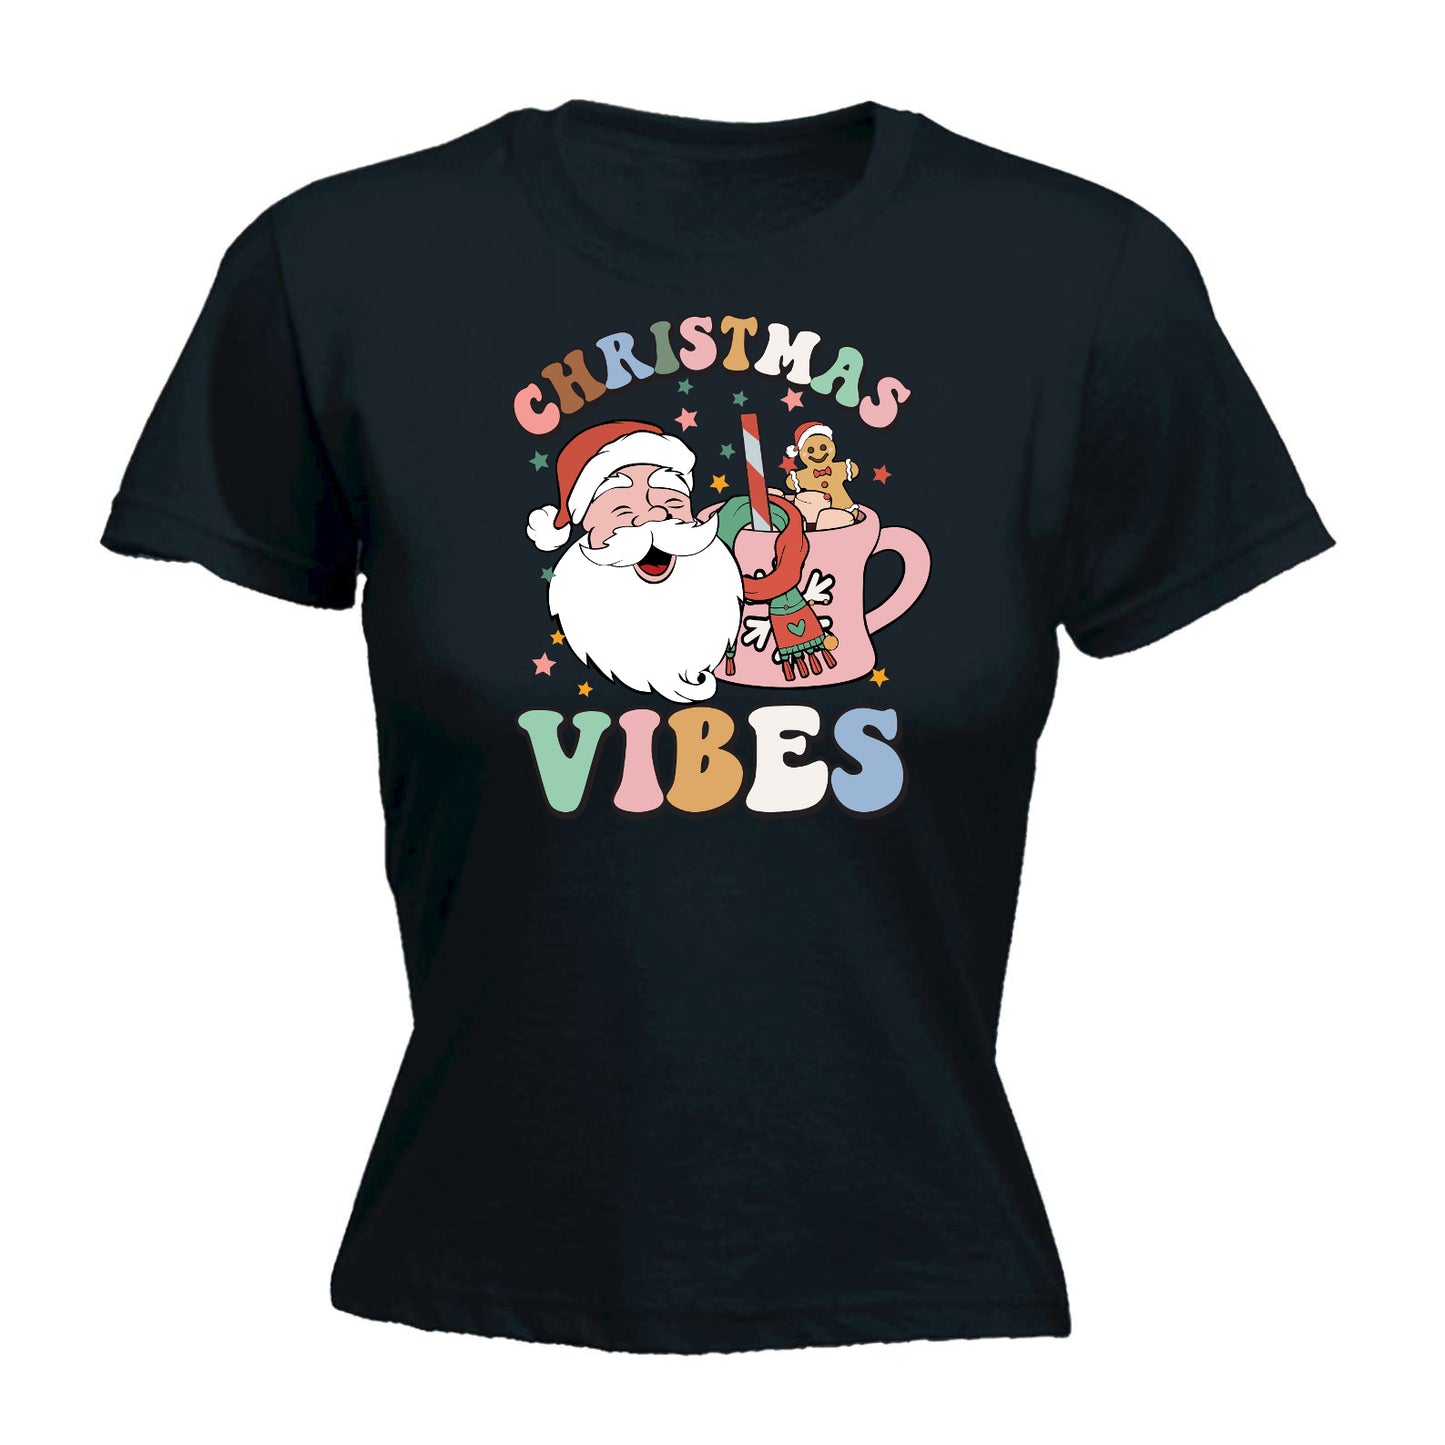 Retro Christmas Vibes - Funny Womens T-Shirt Tshirt